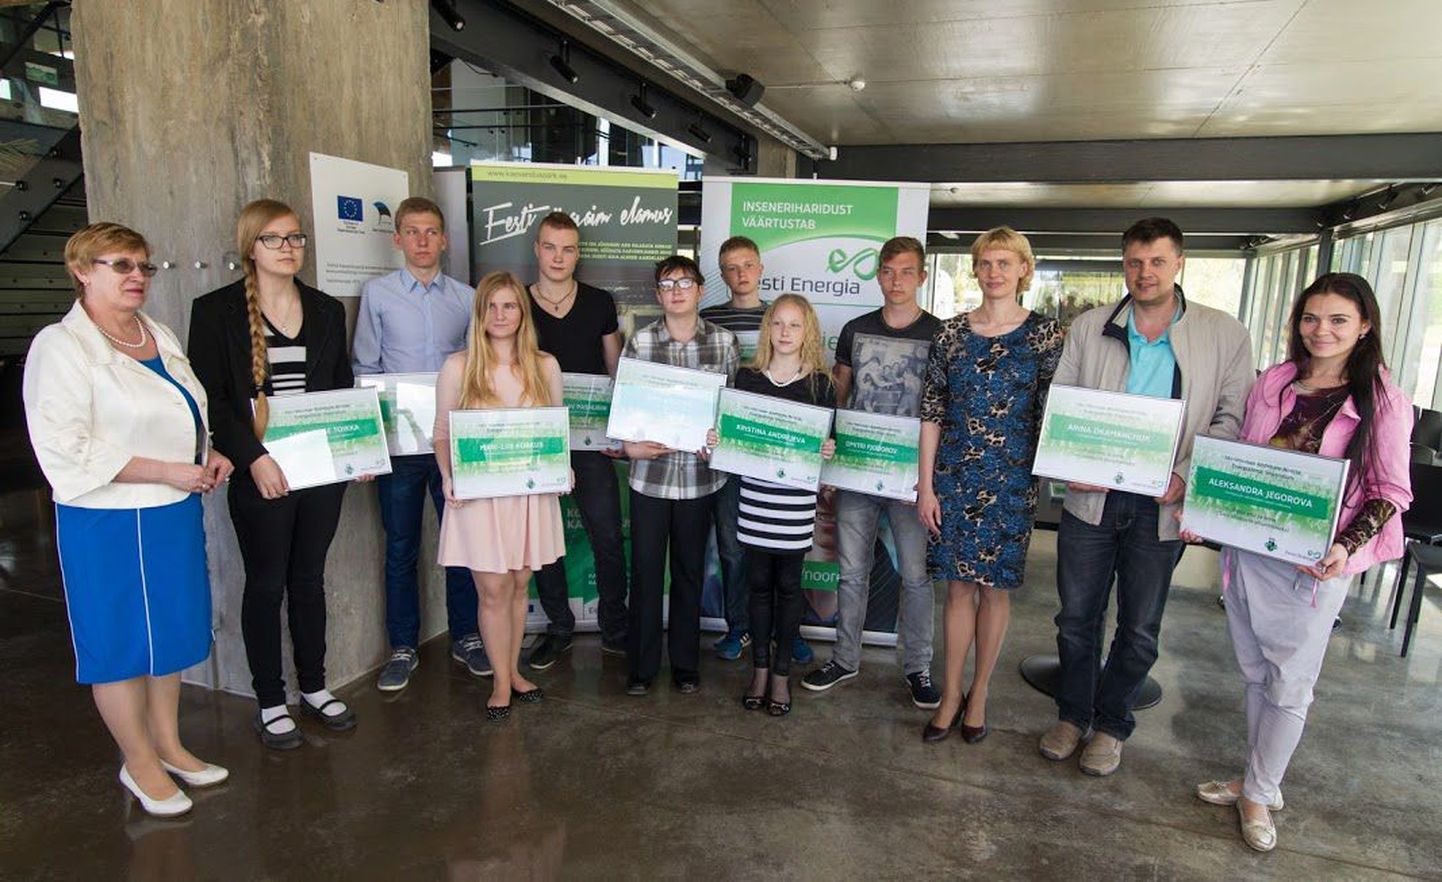 Eesti Energia и местные самоуправления выделили одаренным молодым людям 5000 евро.